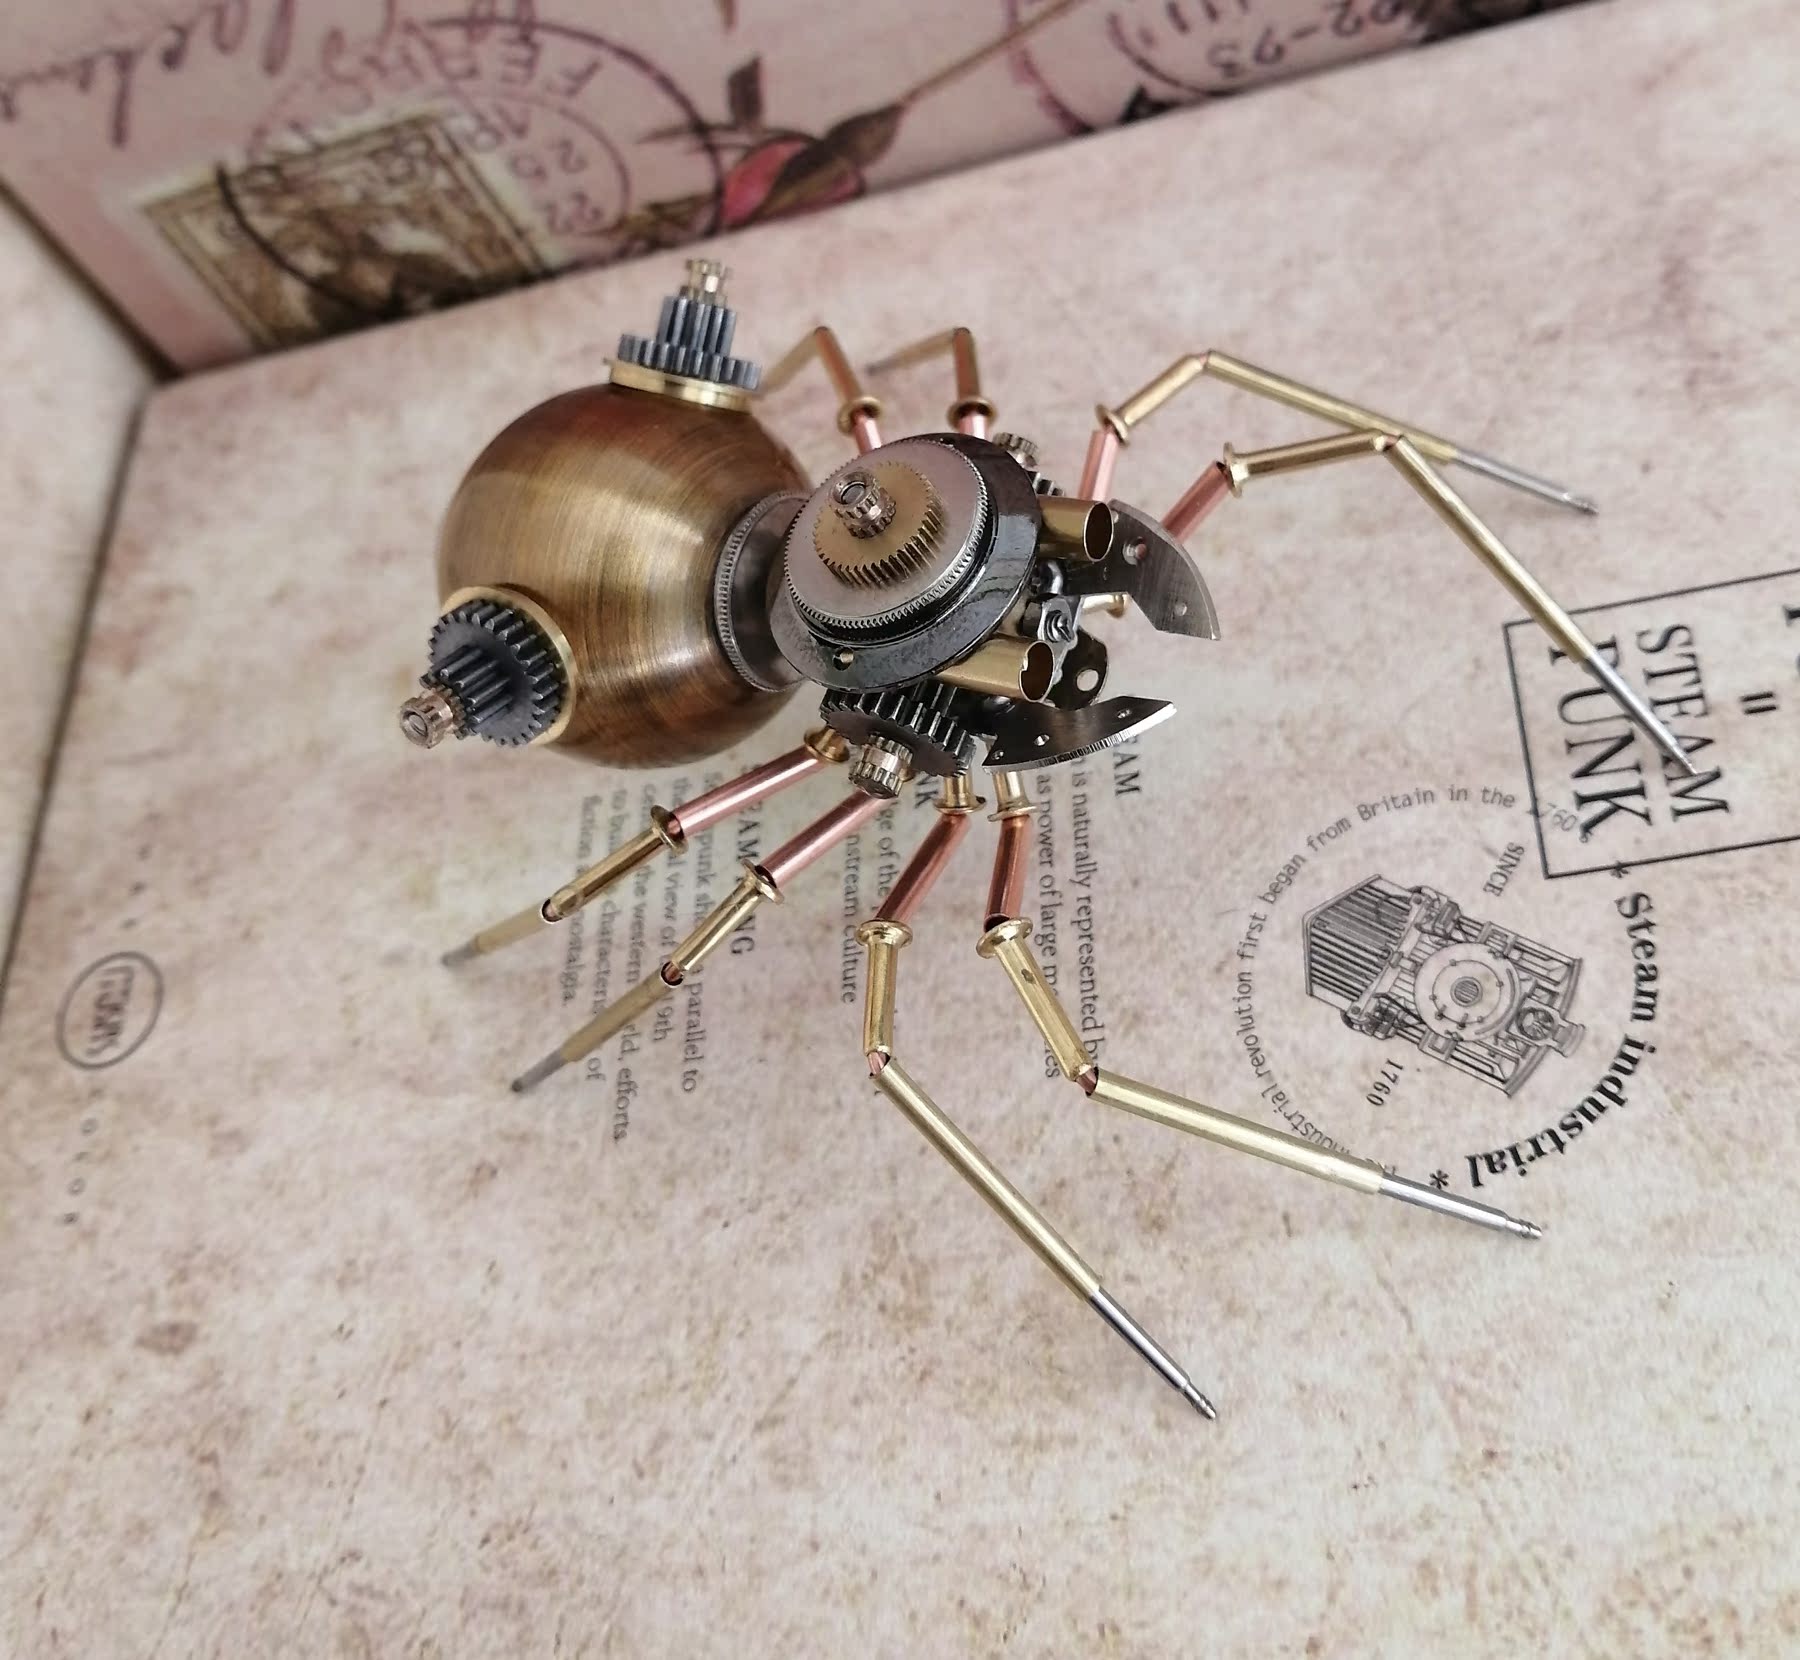 机械昆虫蒸汽朋克风机械蜘蛛全金属纯手工制作小工艺品摆件